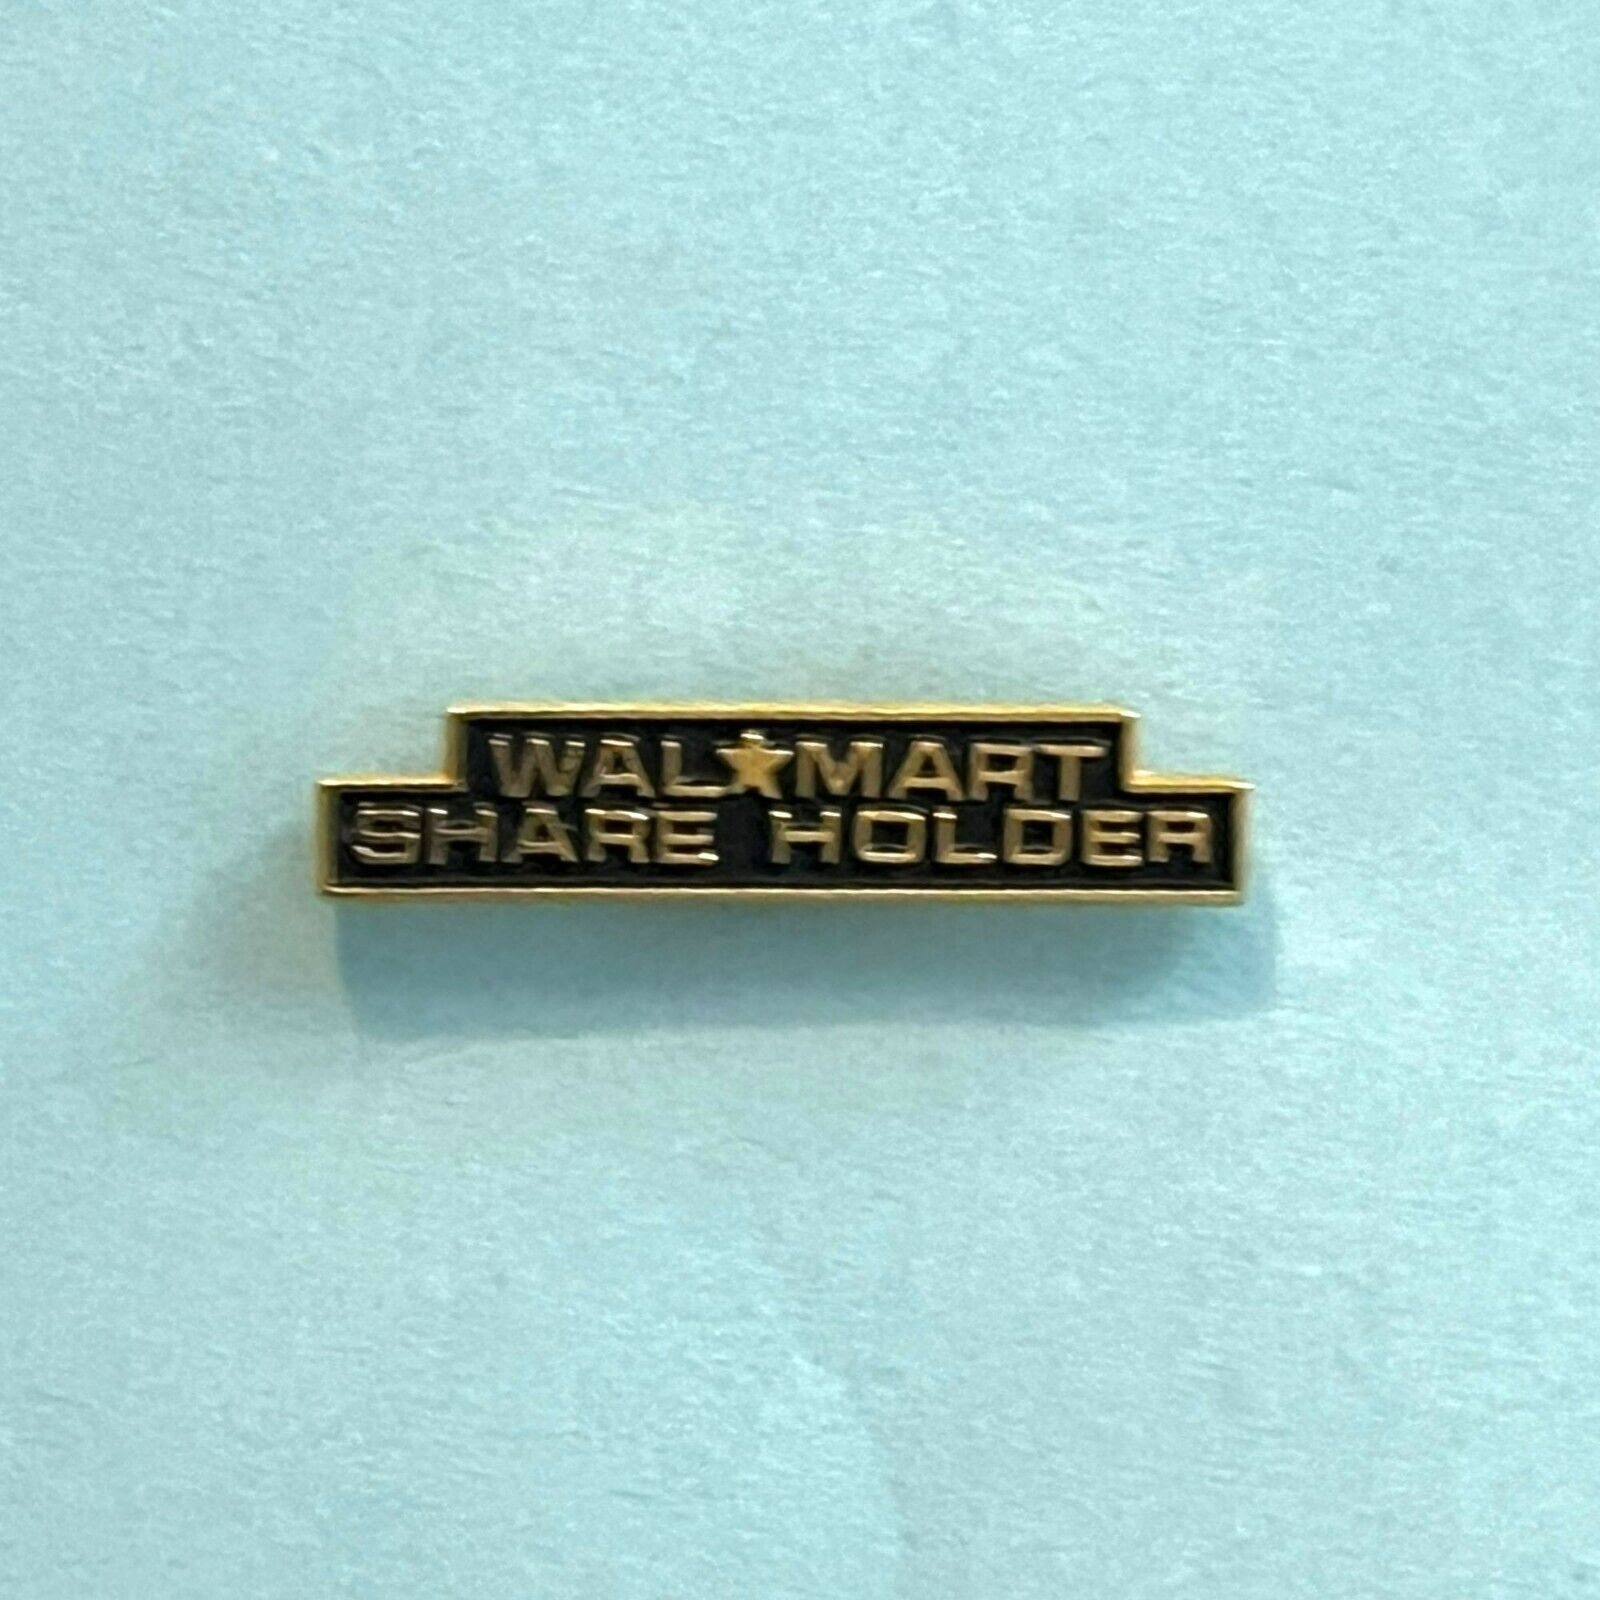 Walmart Vintage Pin Old Wal-Mart Logo Wal-mart Shareholder Small